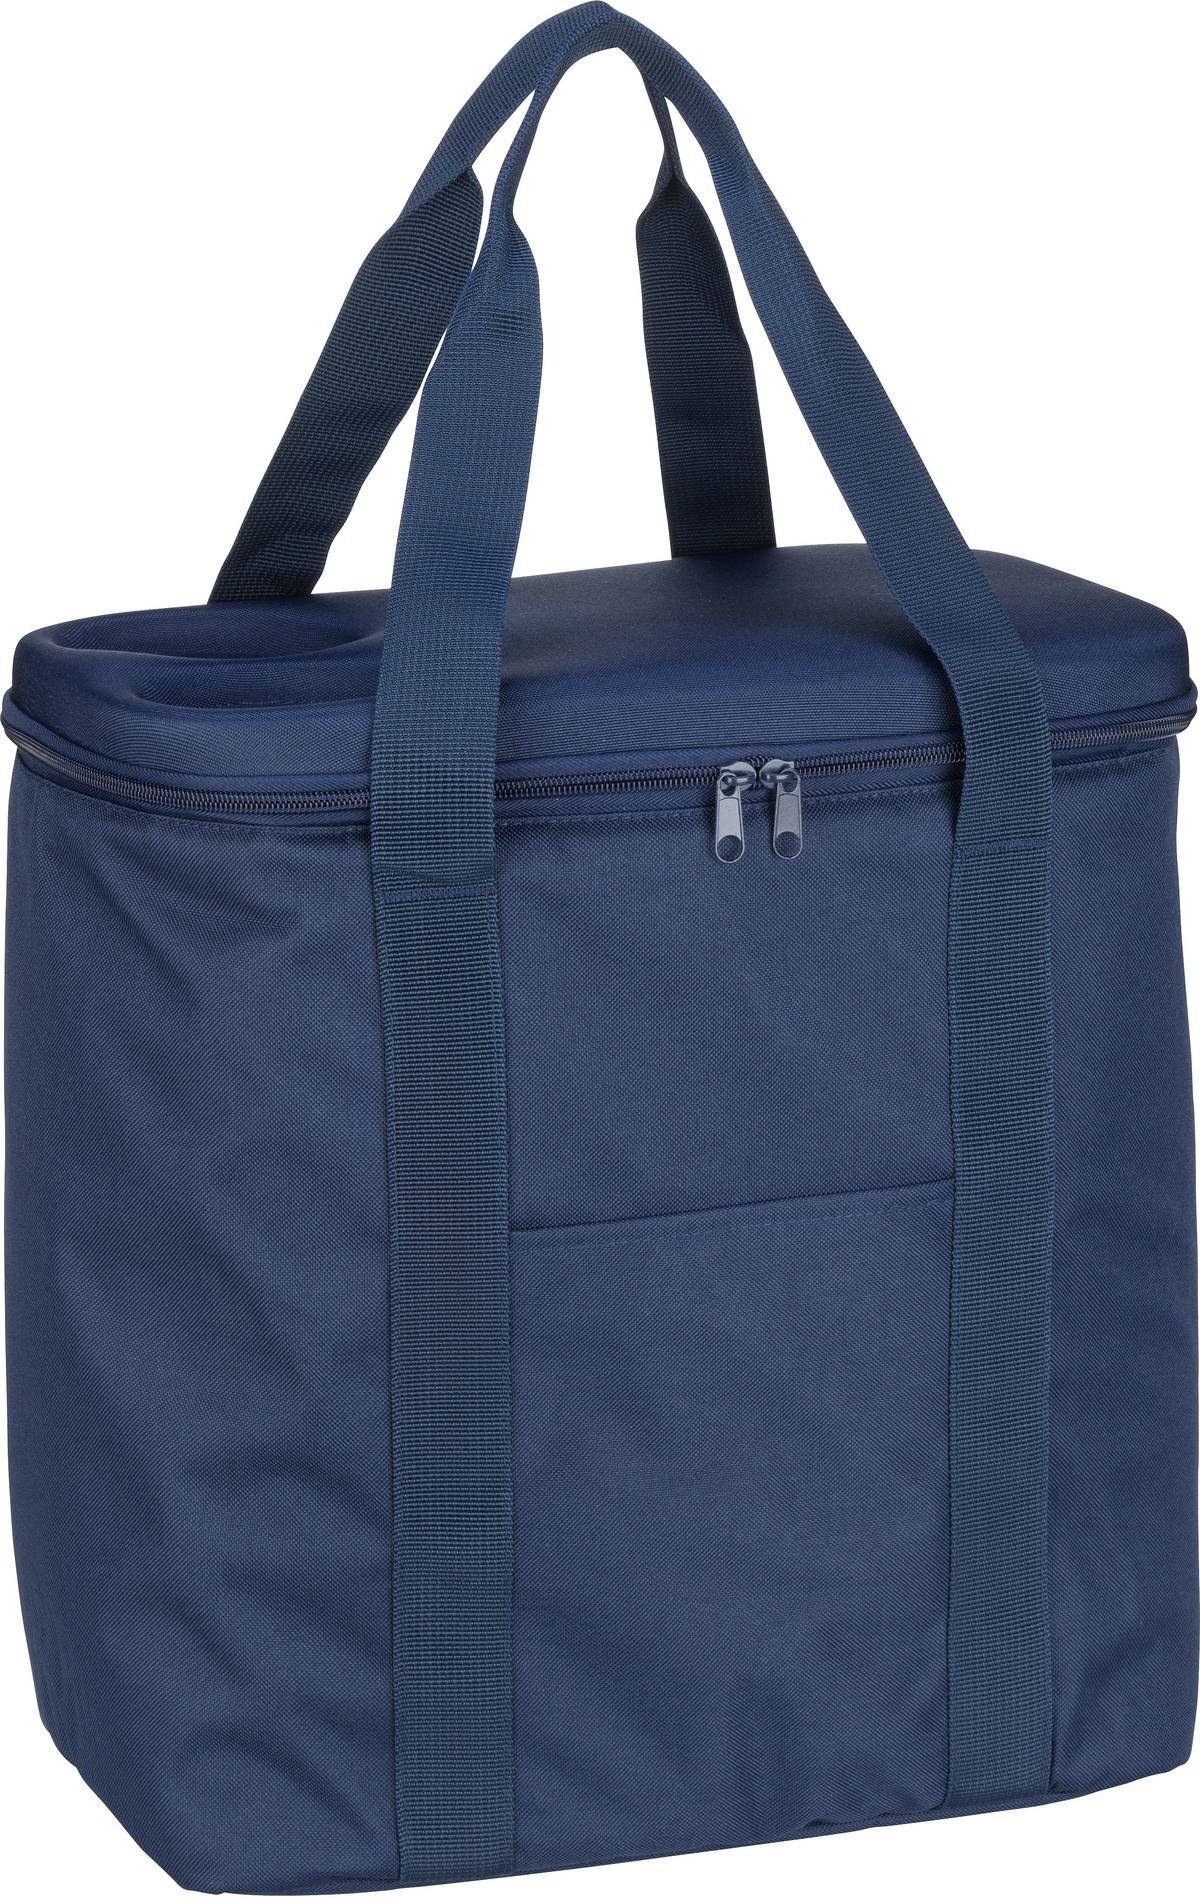 reisenthel coolerbag XL  in Navy (30 Liter), Einkaufstasche